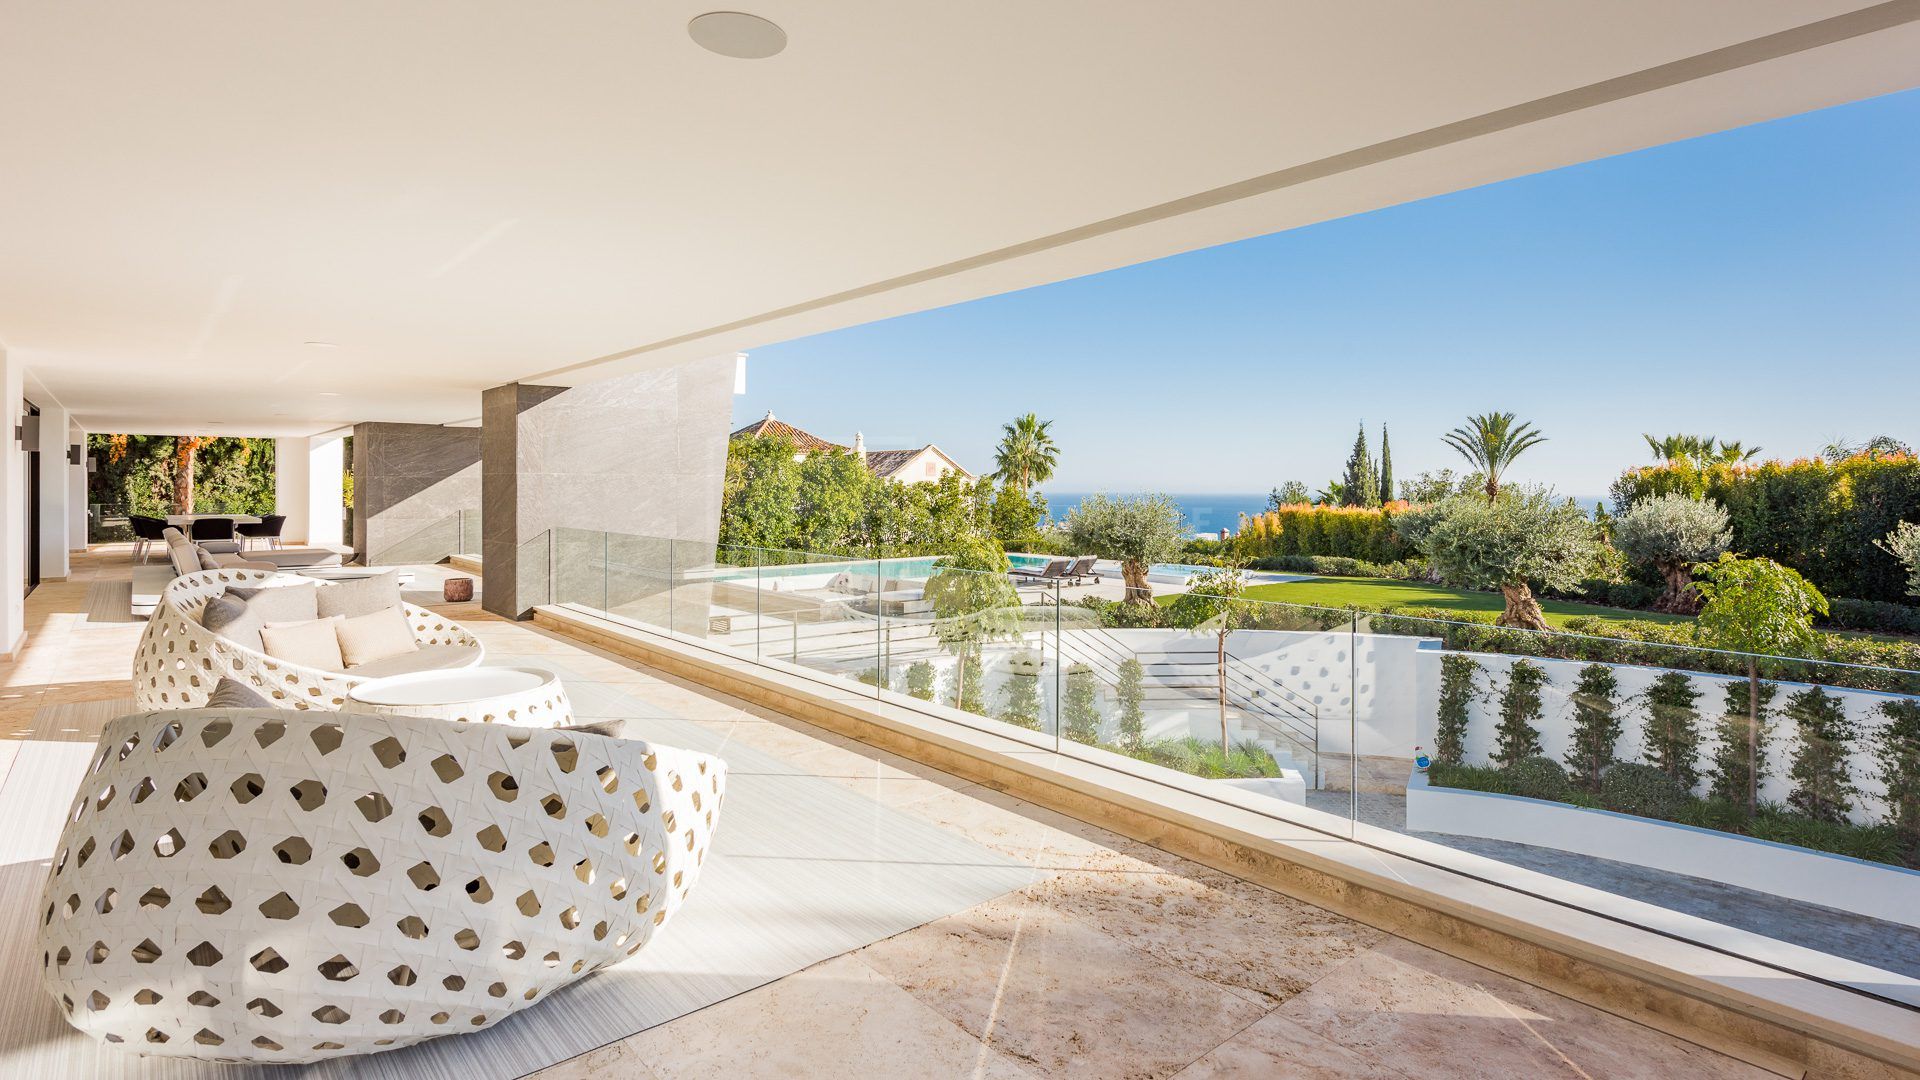 Rental Property: Stunning Contemporary 6-Bedroom Villa in Sierra Blanca